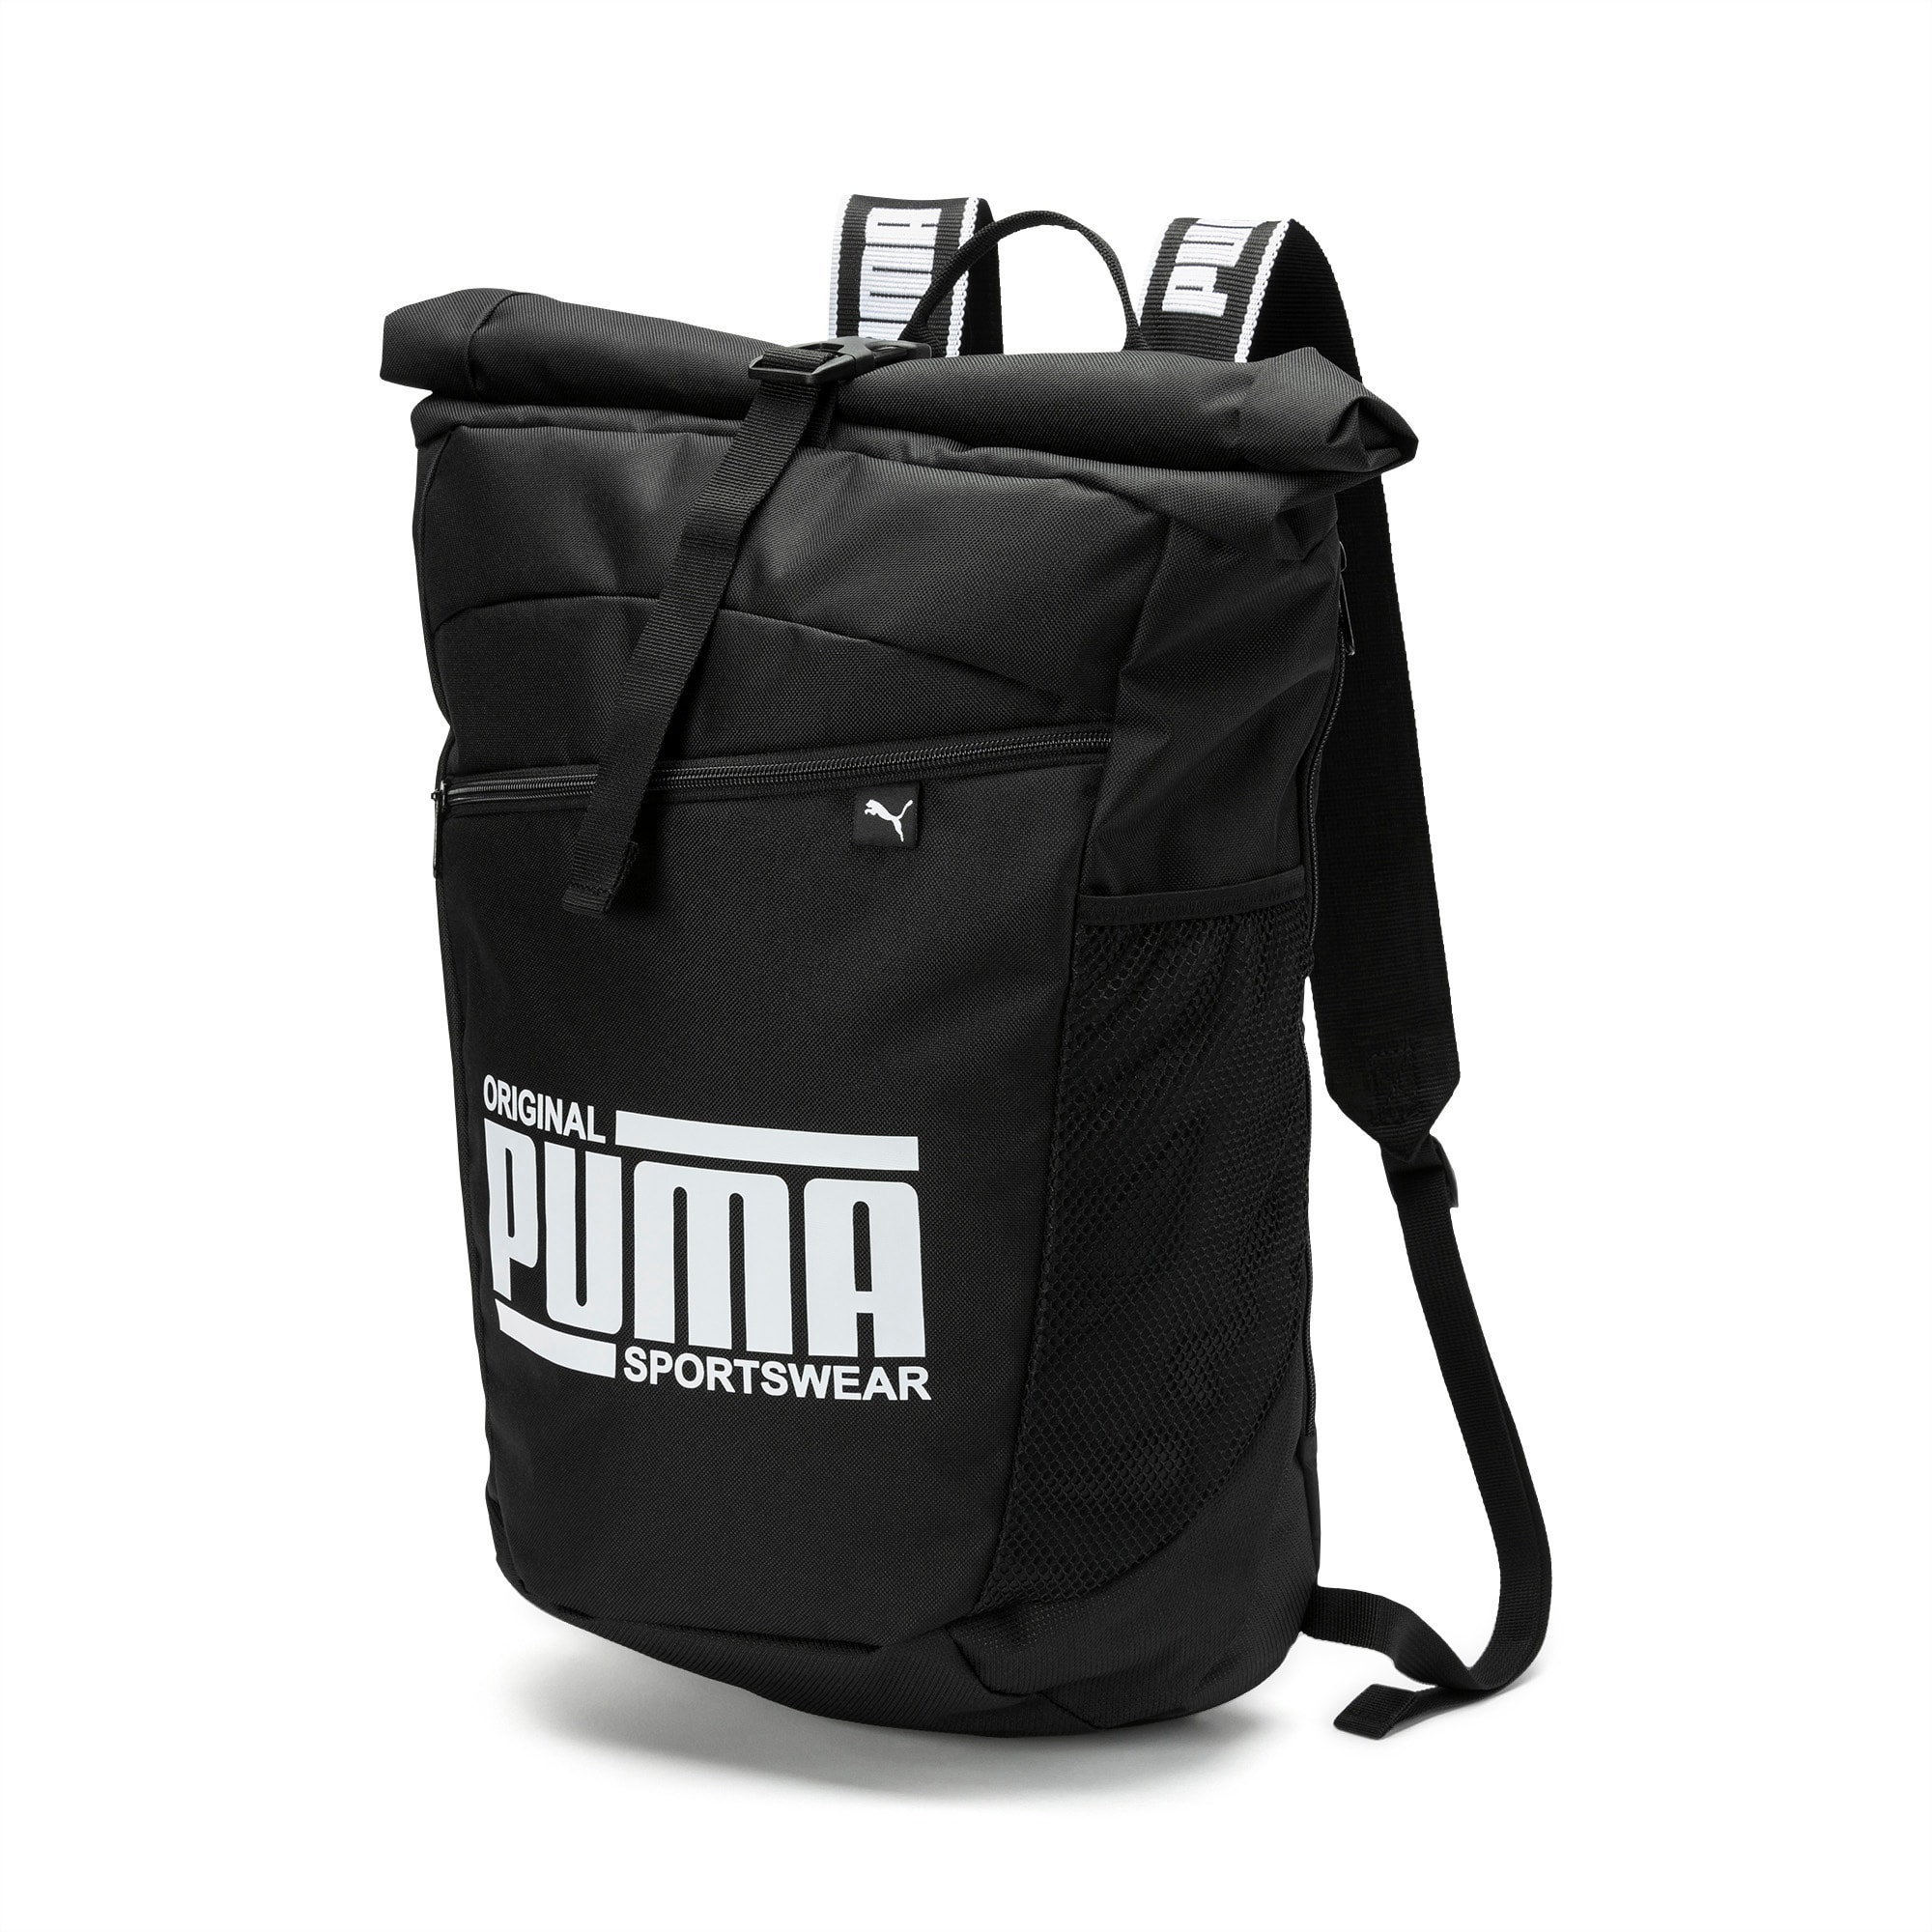 sole backpack puma